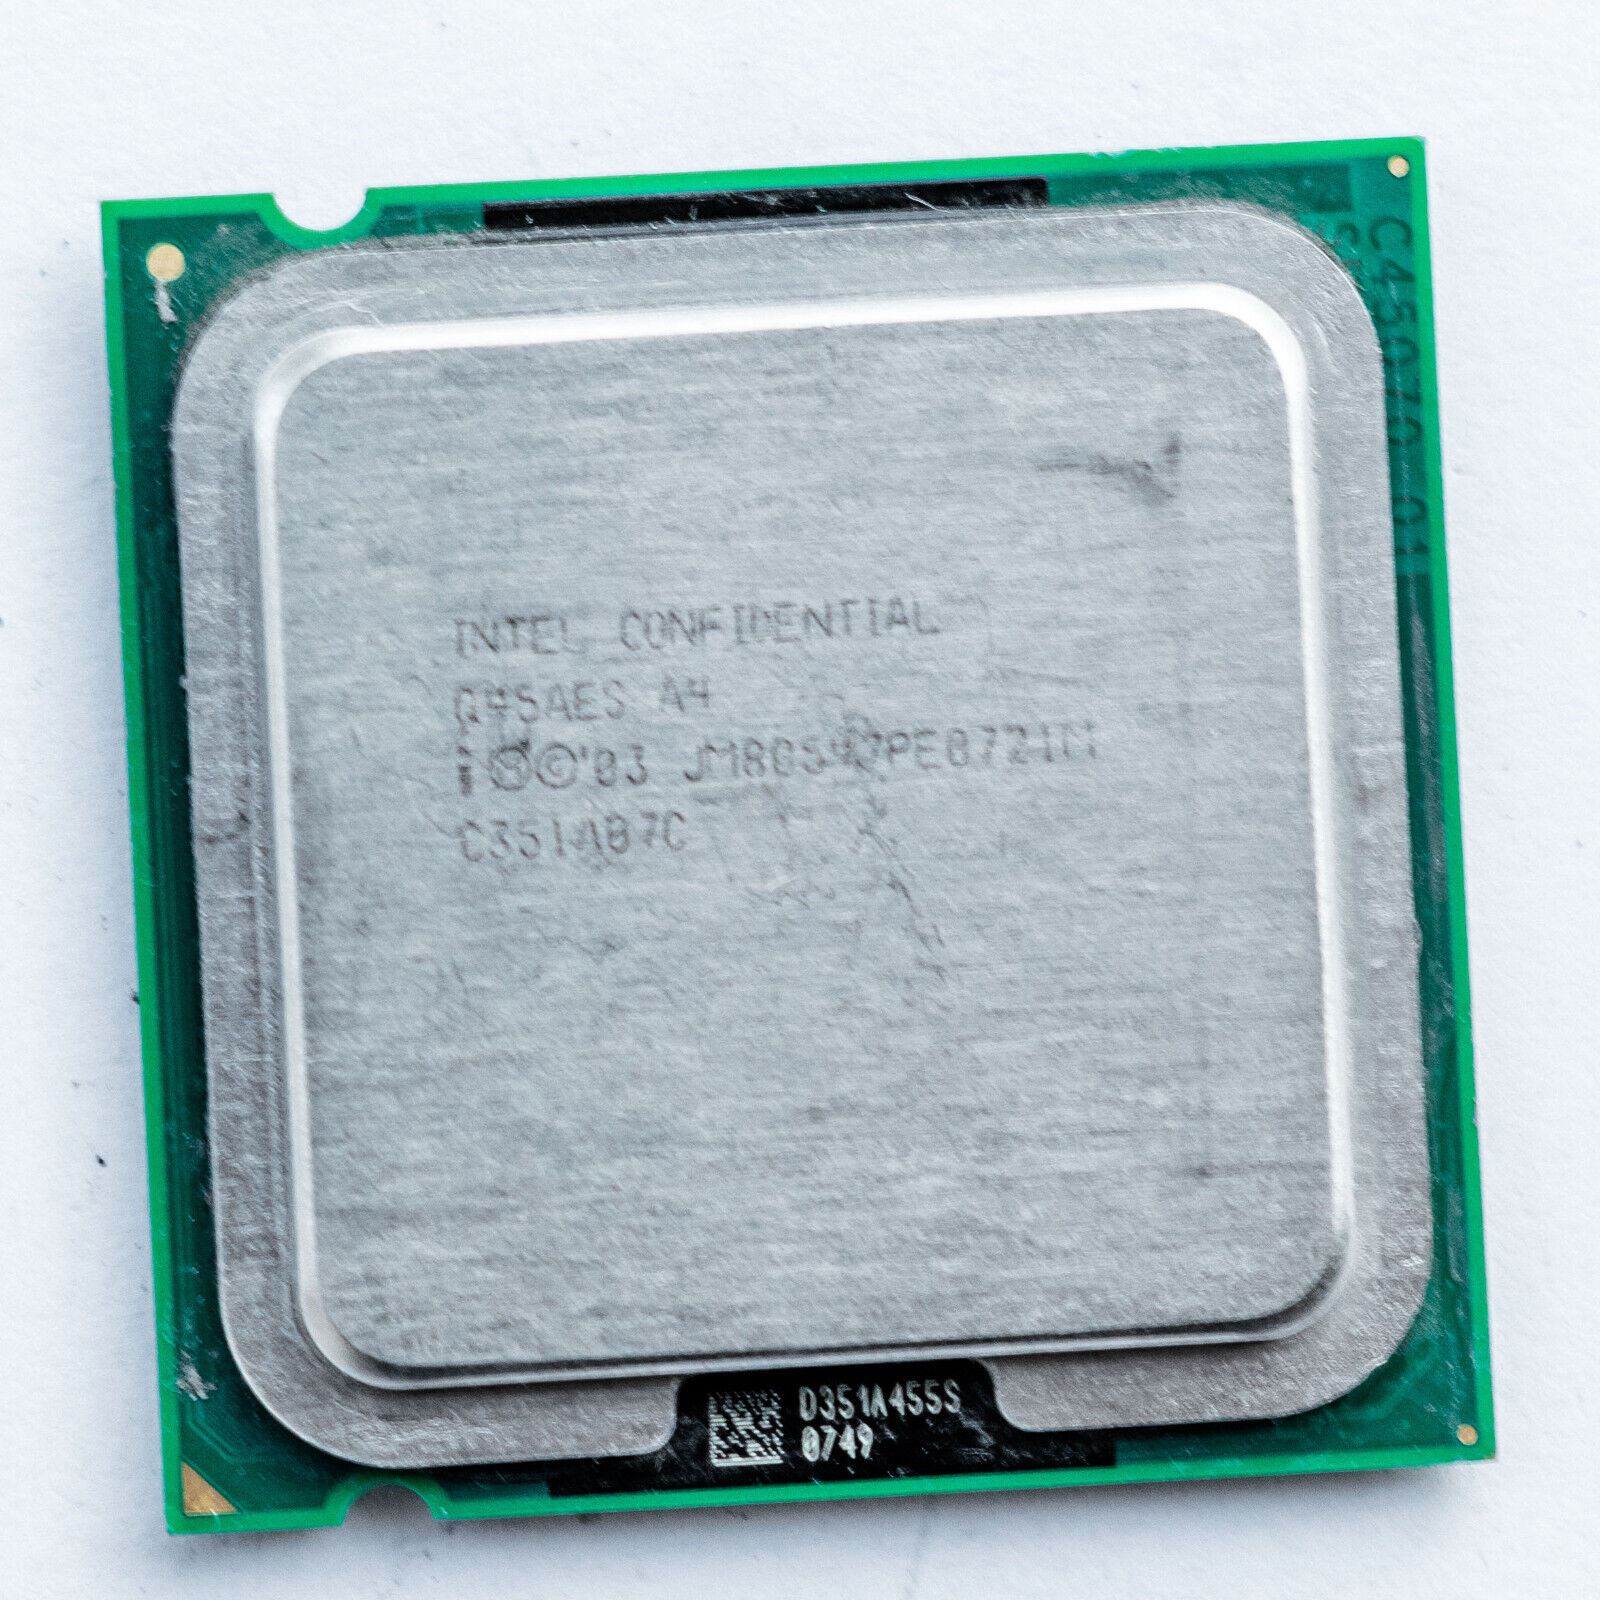 Intel Engineering ES Q45AES Pentium 4 510 2.8GHz LGA775 Prescott 1MB Processor